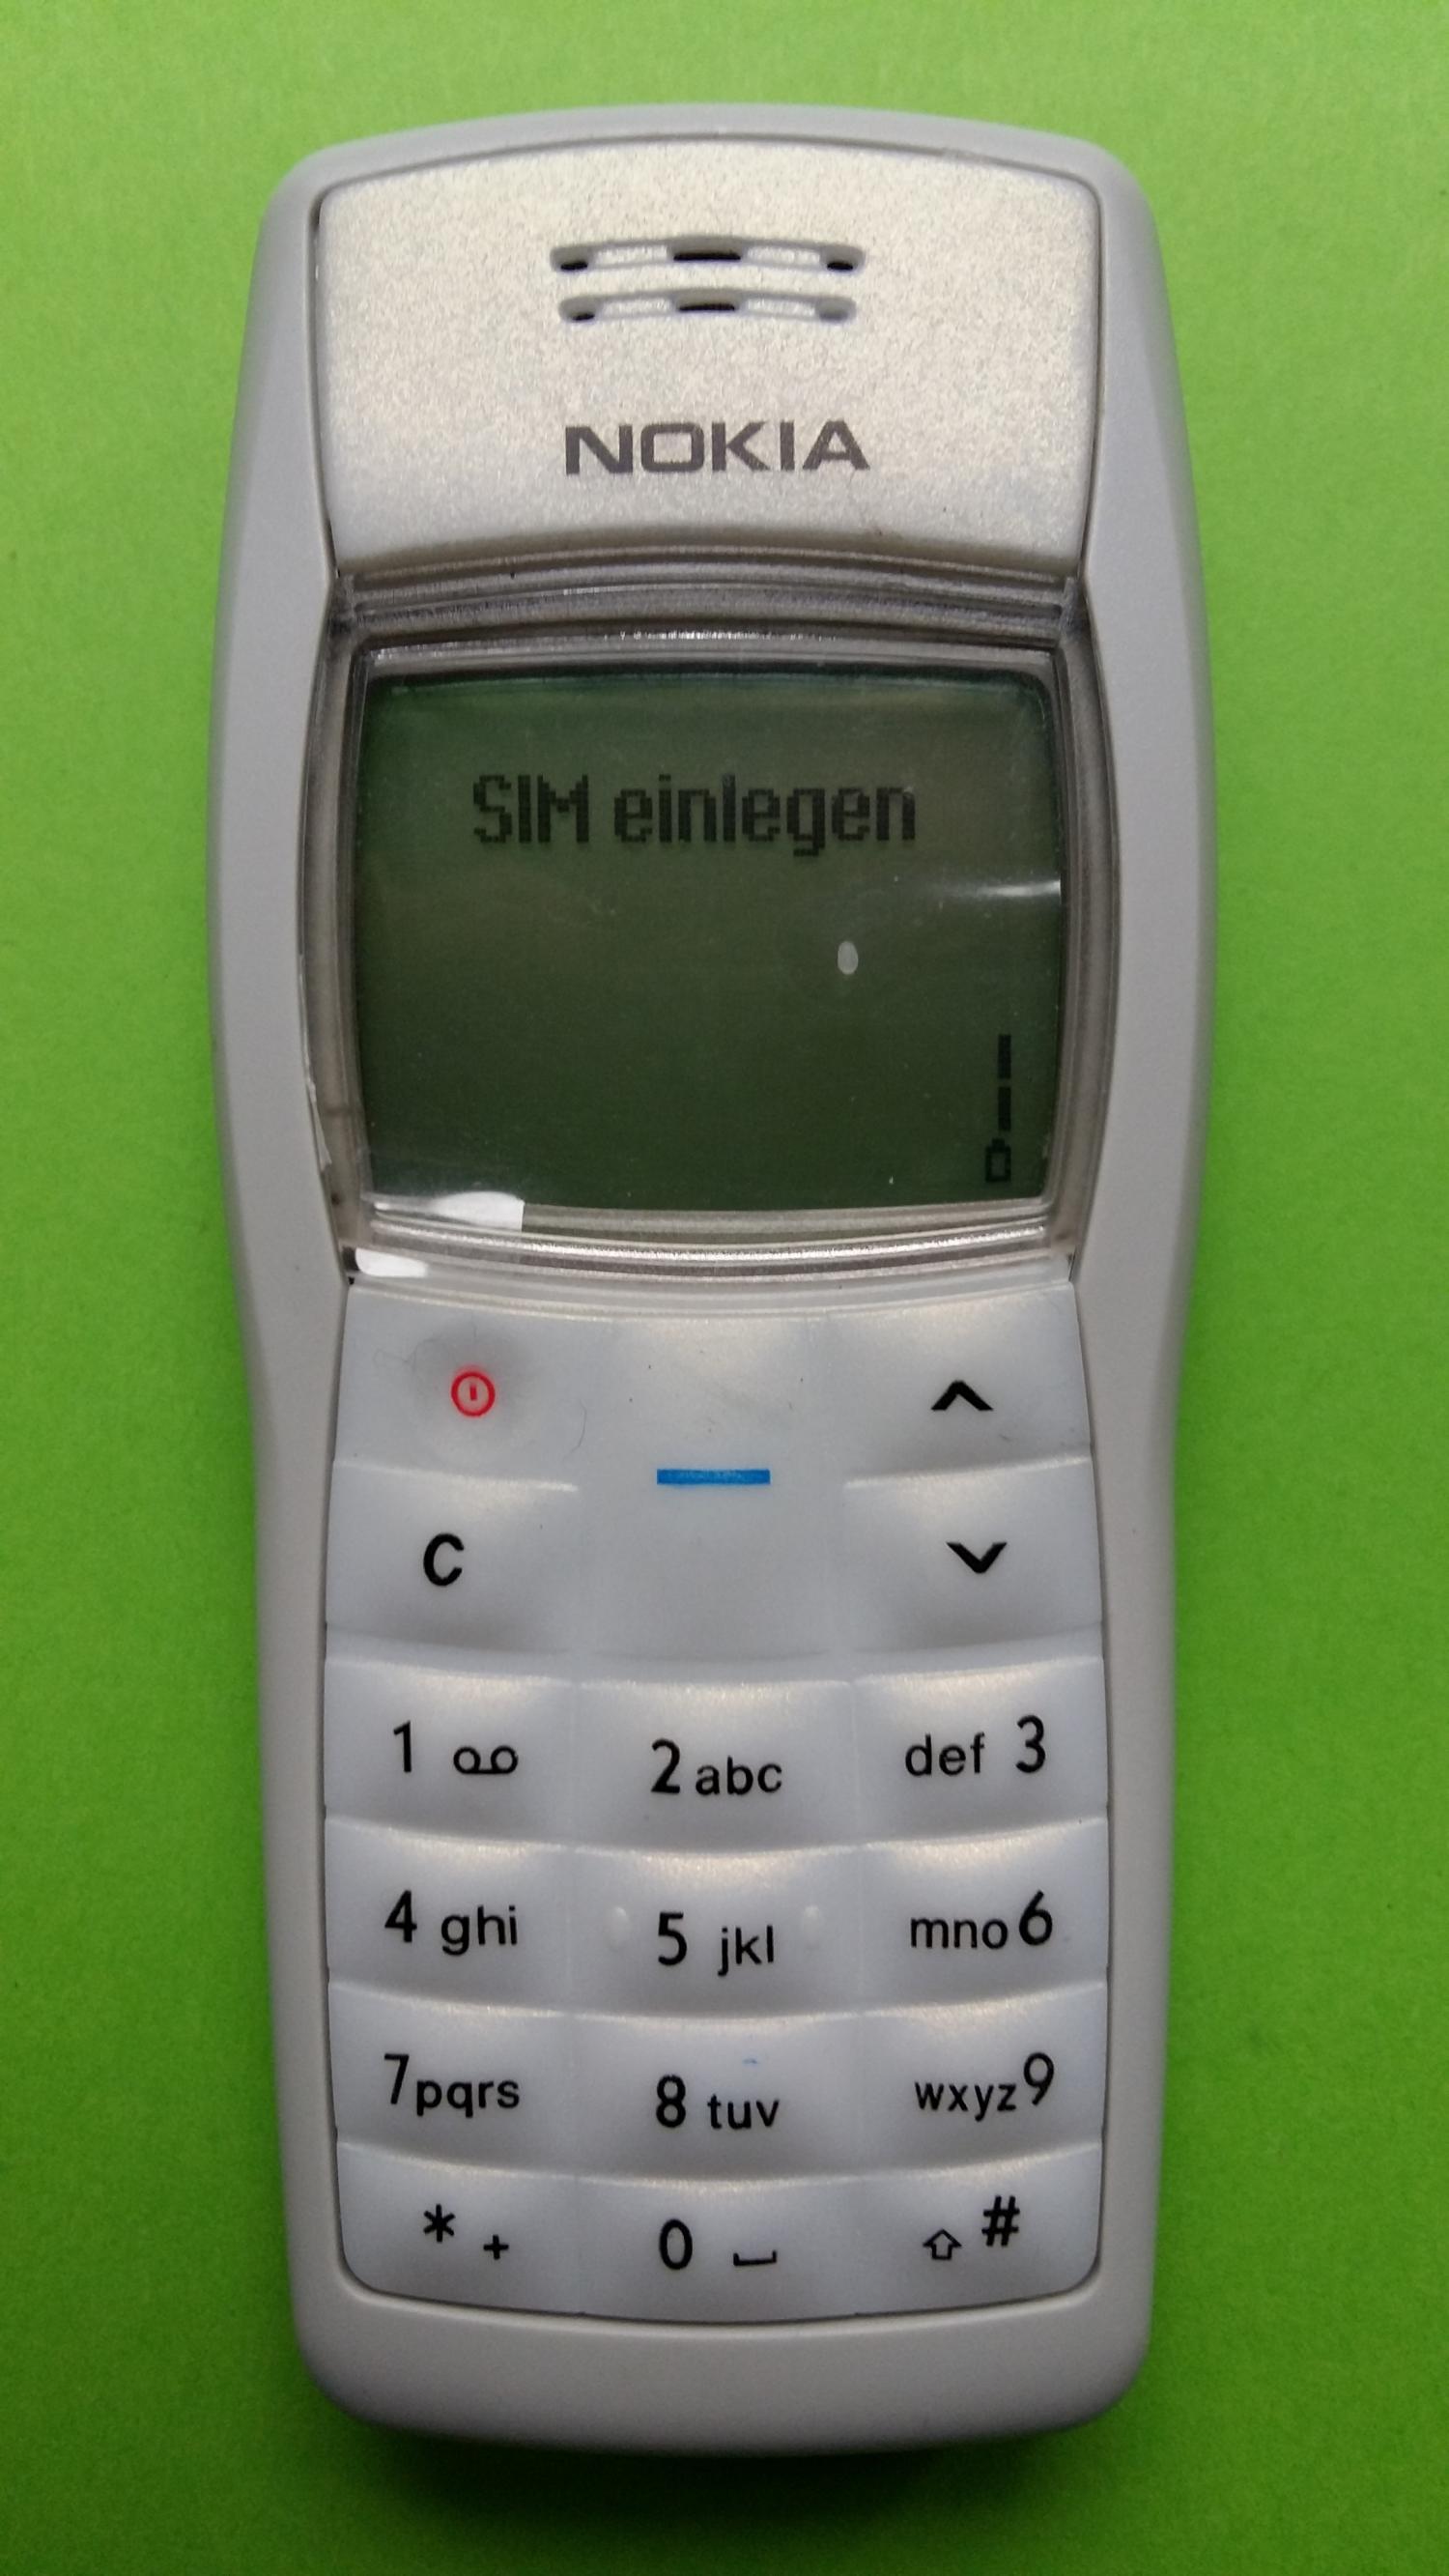 image-7300305-Nokia 1100 (3)1.jpg